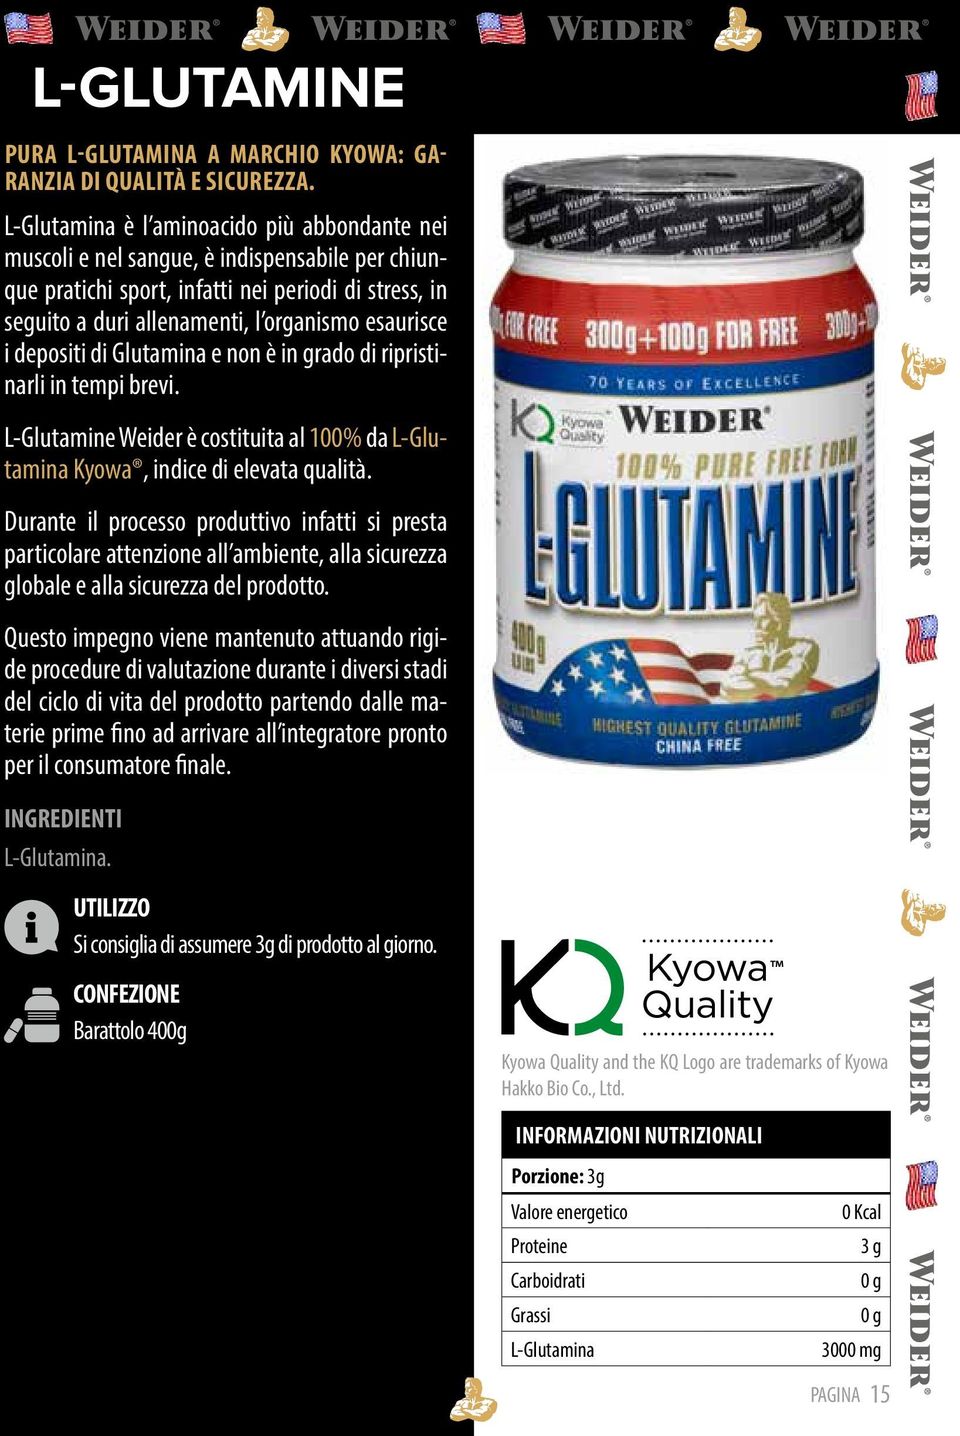 depositi di Glutamina e non è in grado di ripristinarli in tempi brevi. L-Glutamine Weider è costituita al 100% da L-Glutamina Kyowa, indice di elevata qualità.